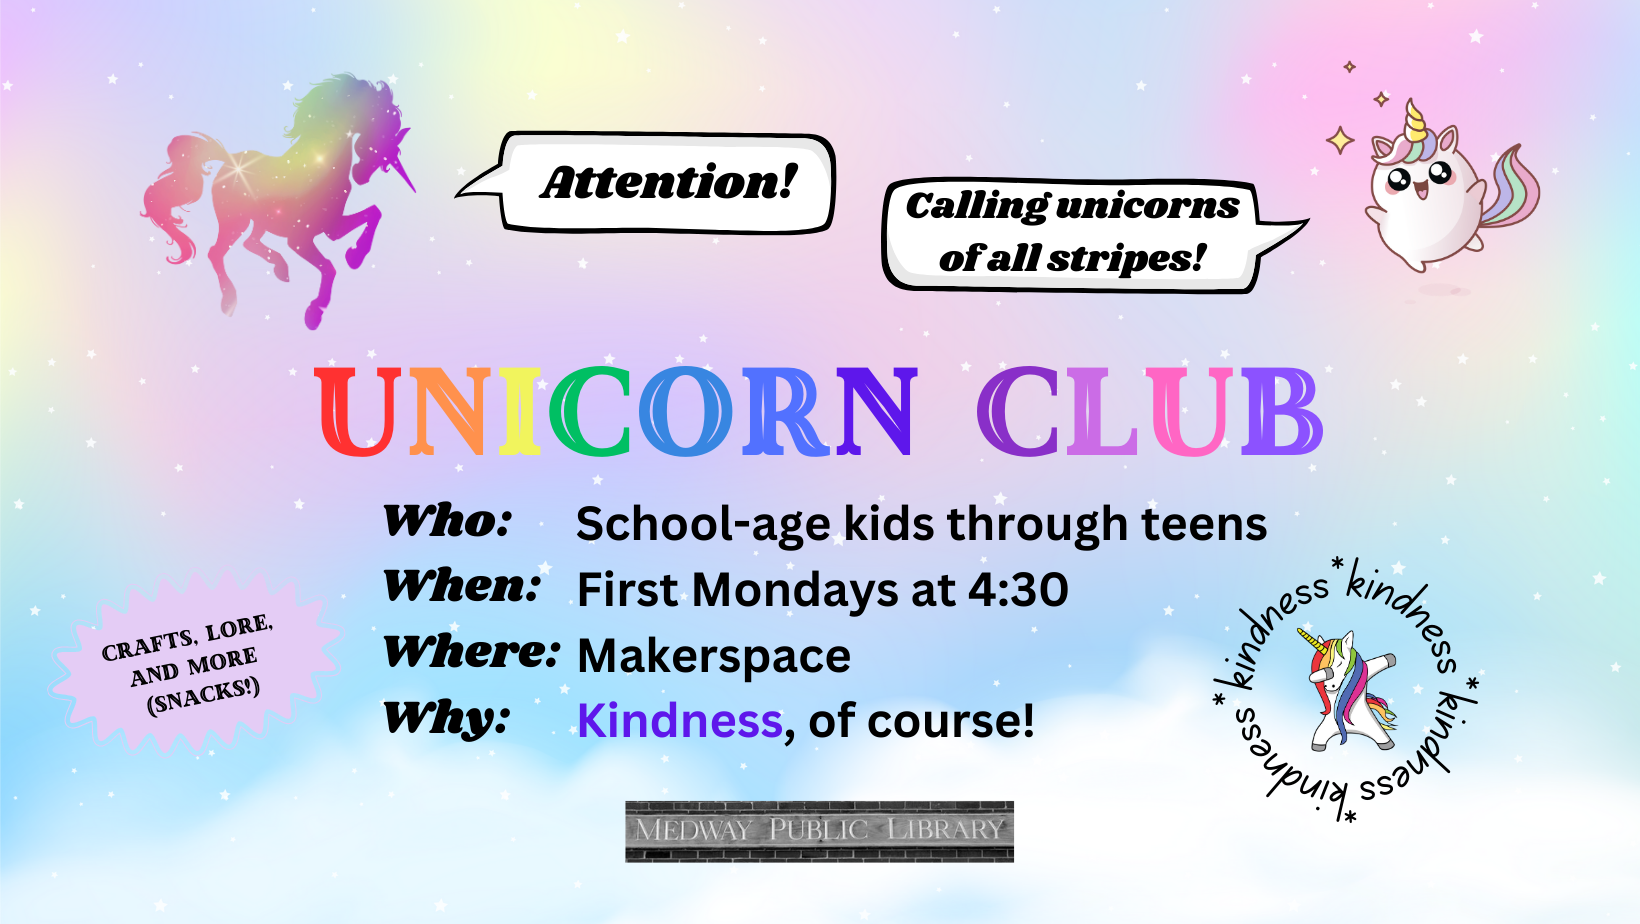 Unicorn Club on First Mondays